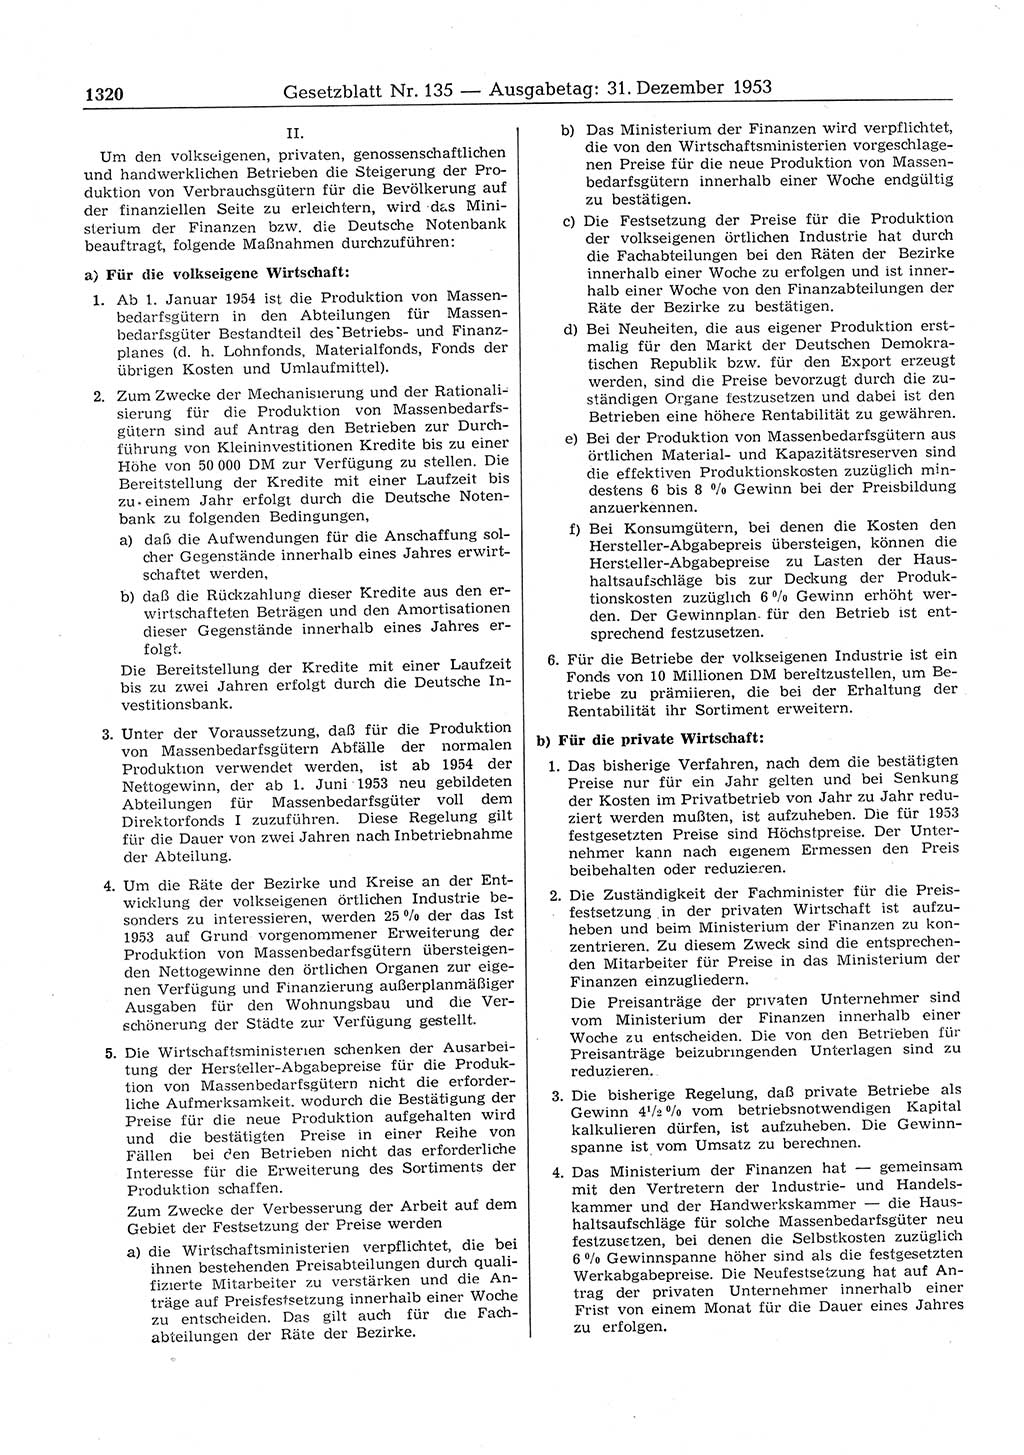 Gesetzblatt (GBl.) der Deutschen Demokratischen Republik (DDR) 1953, Seite 1320 (GBl. DDR 1953, S. 1320)